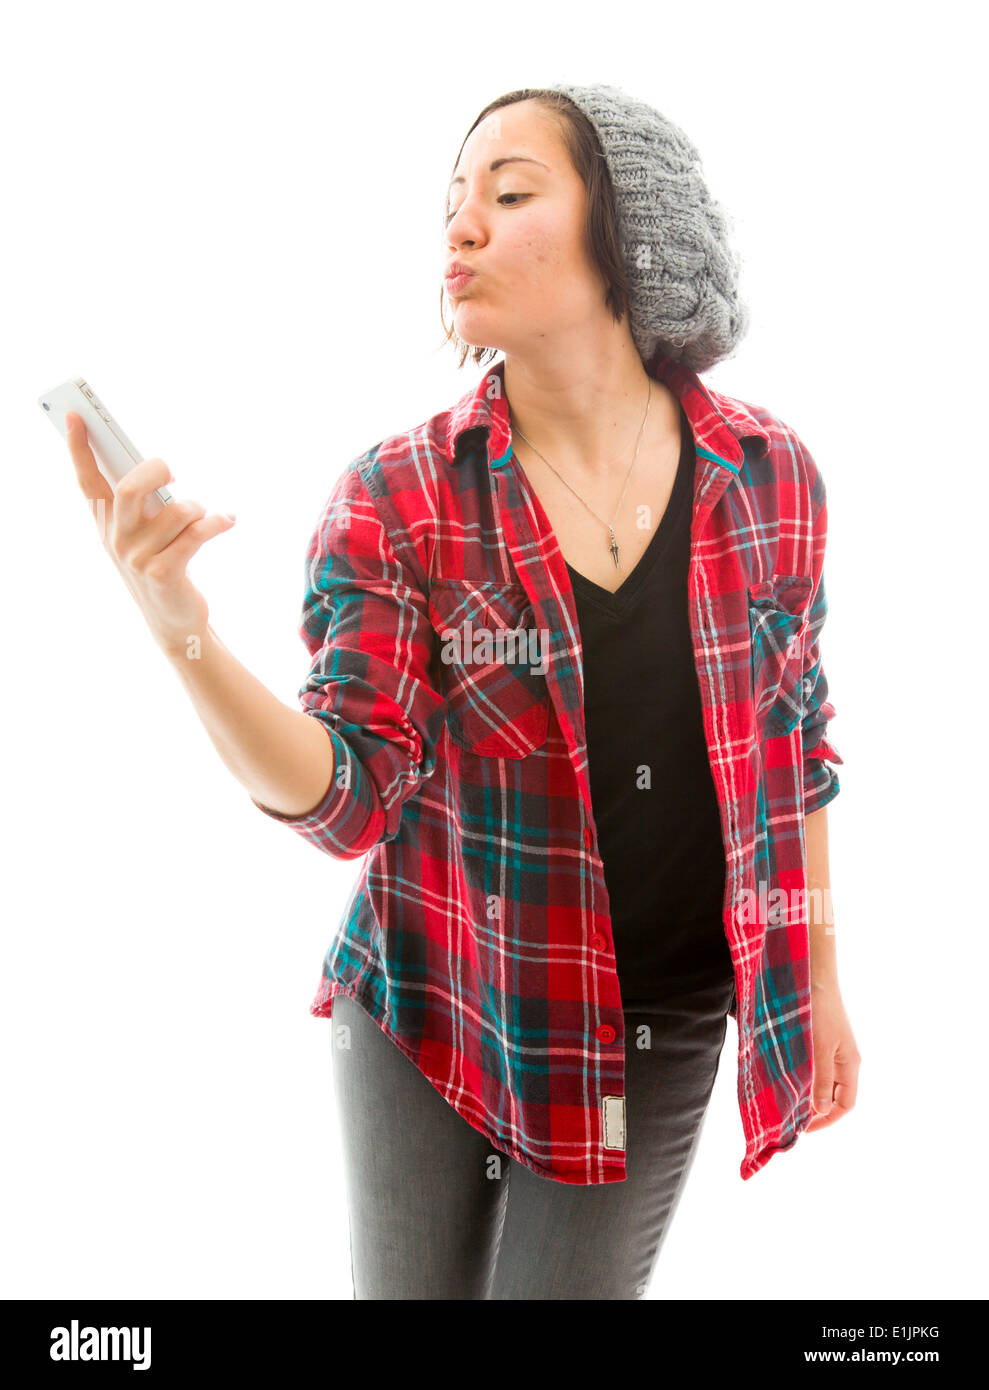 Young woman taking photo d'elle-même avec un téléphone mobile Banque D'Images